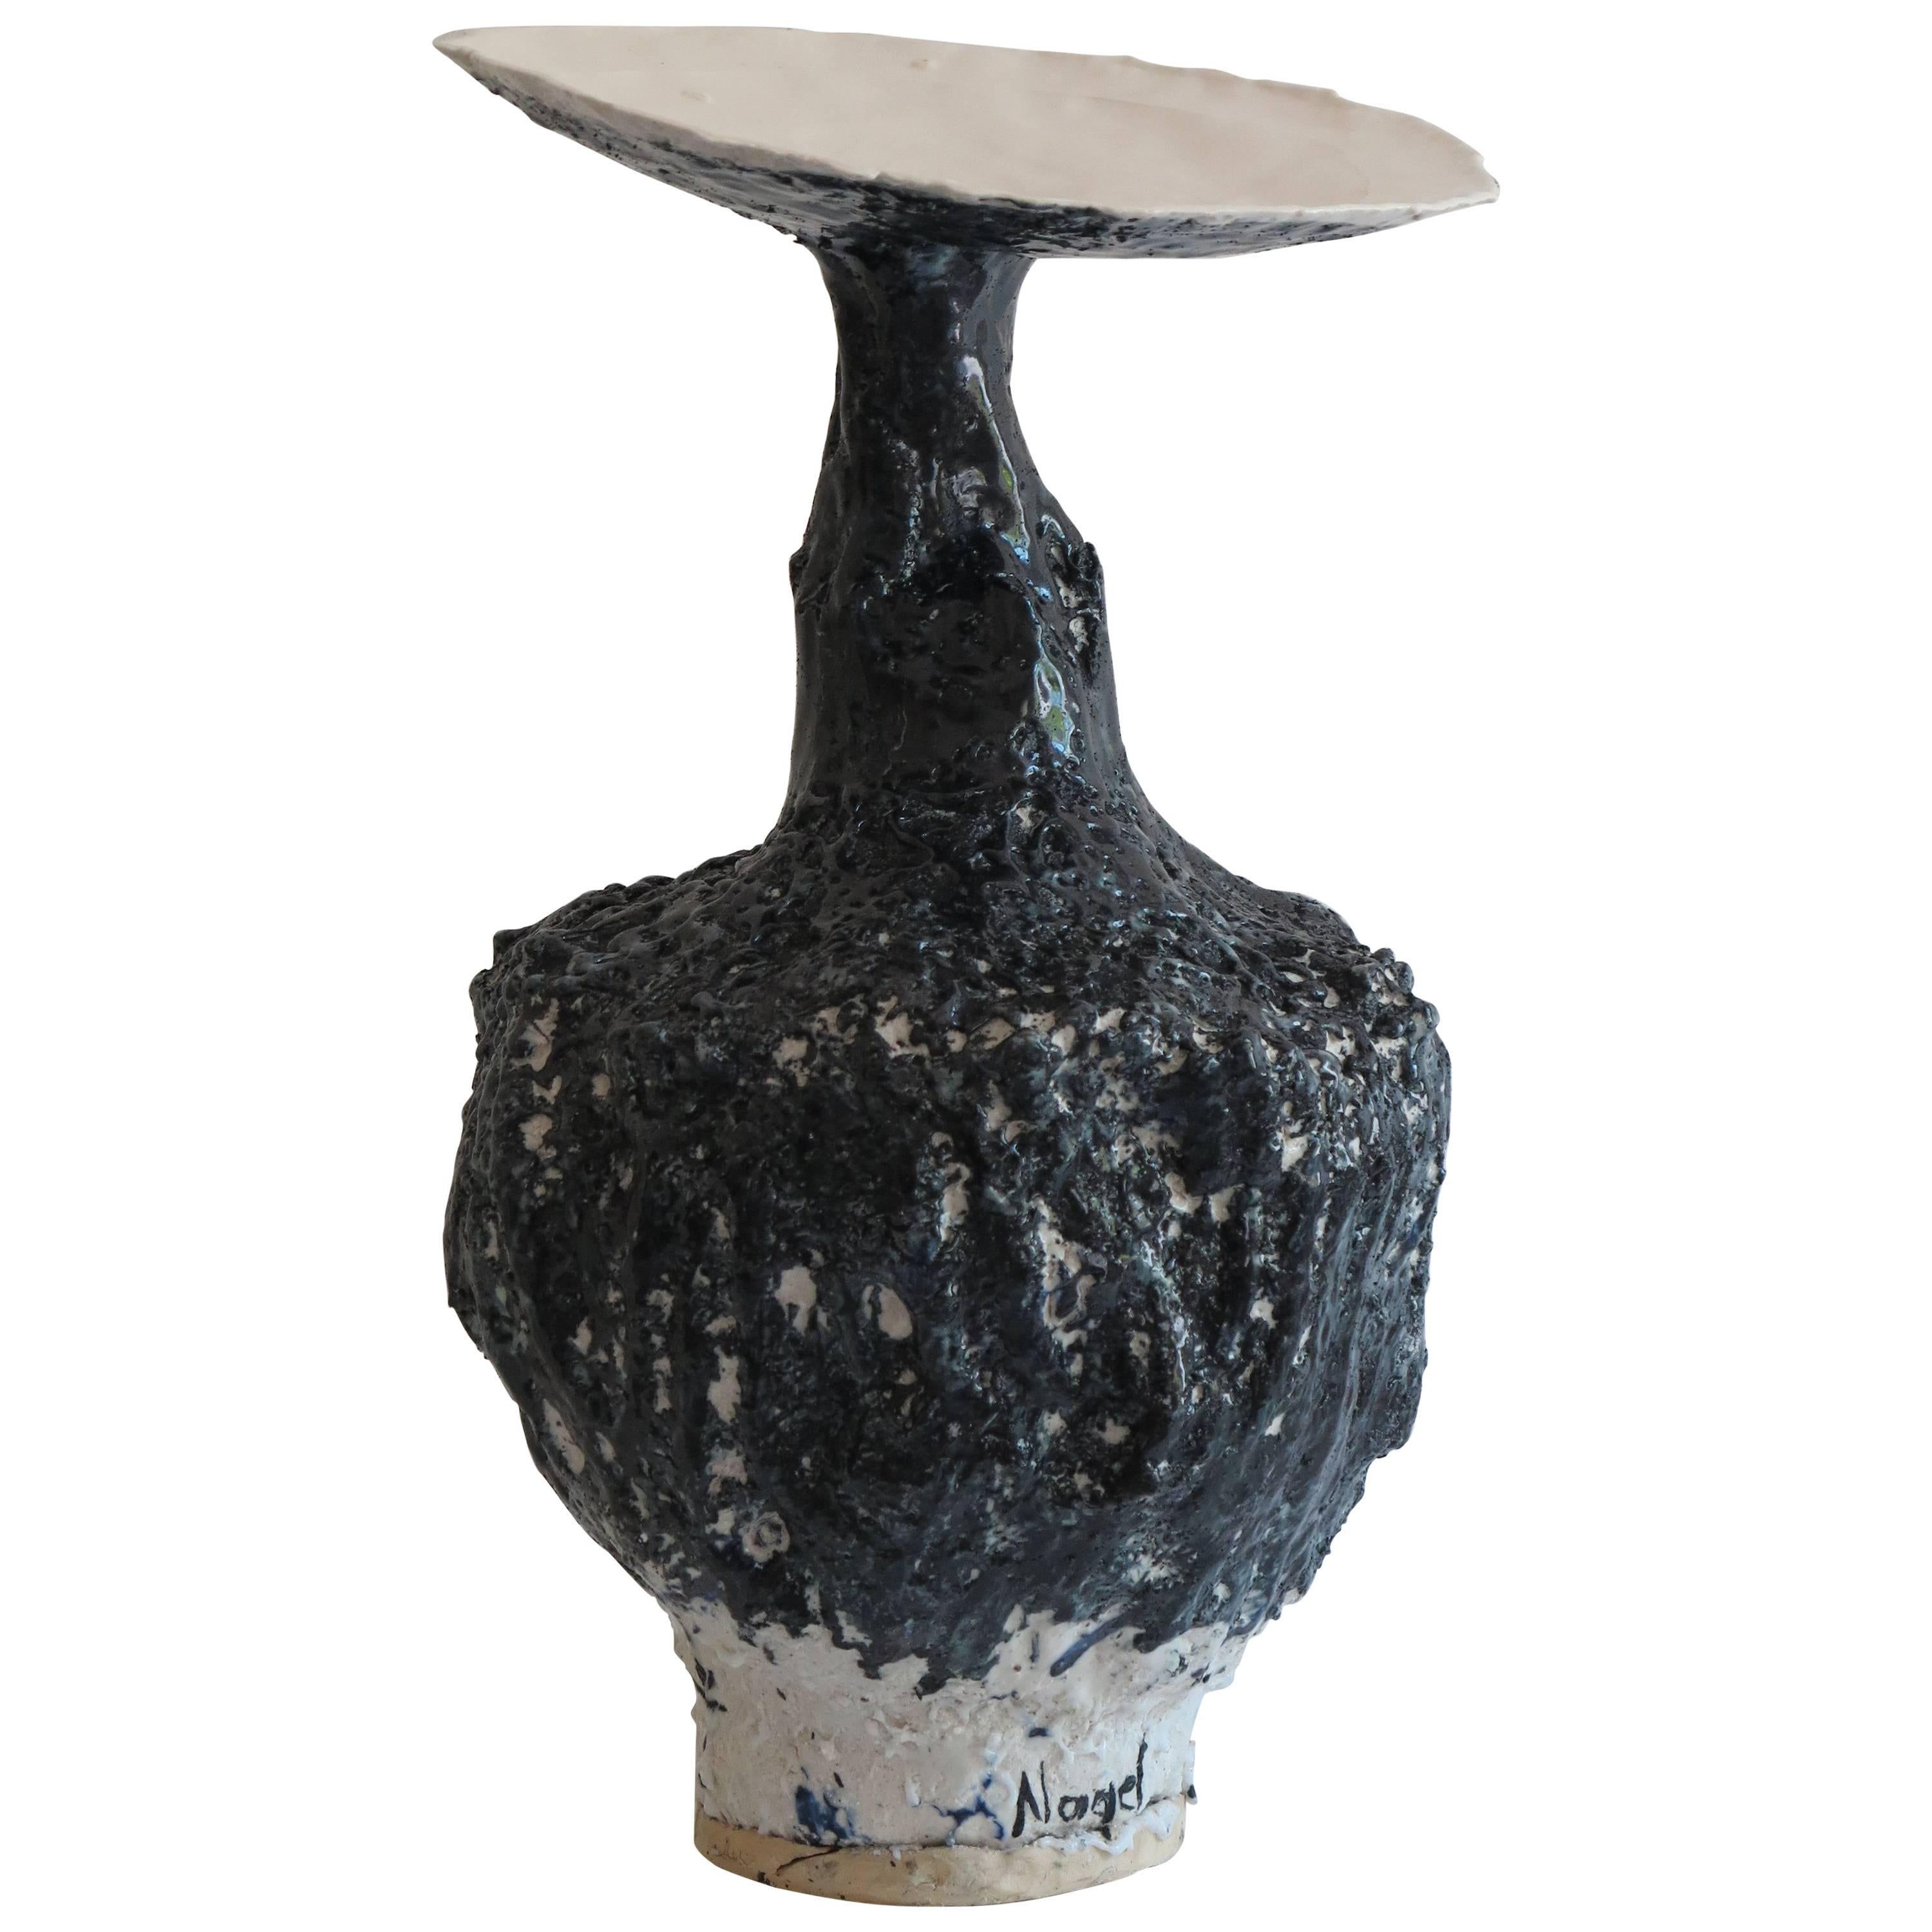 Contemporary Black Porcelain Vessel or Vase by Johannes Nagel, 2016 For Sale